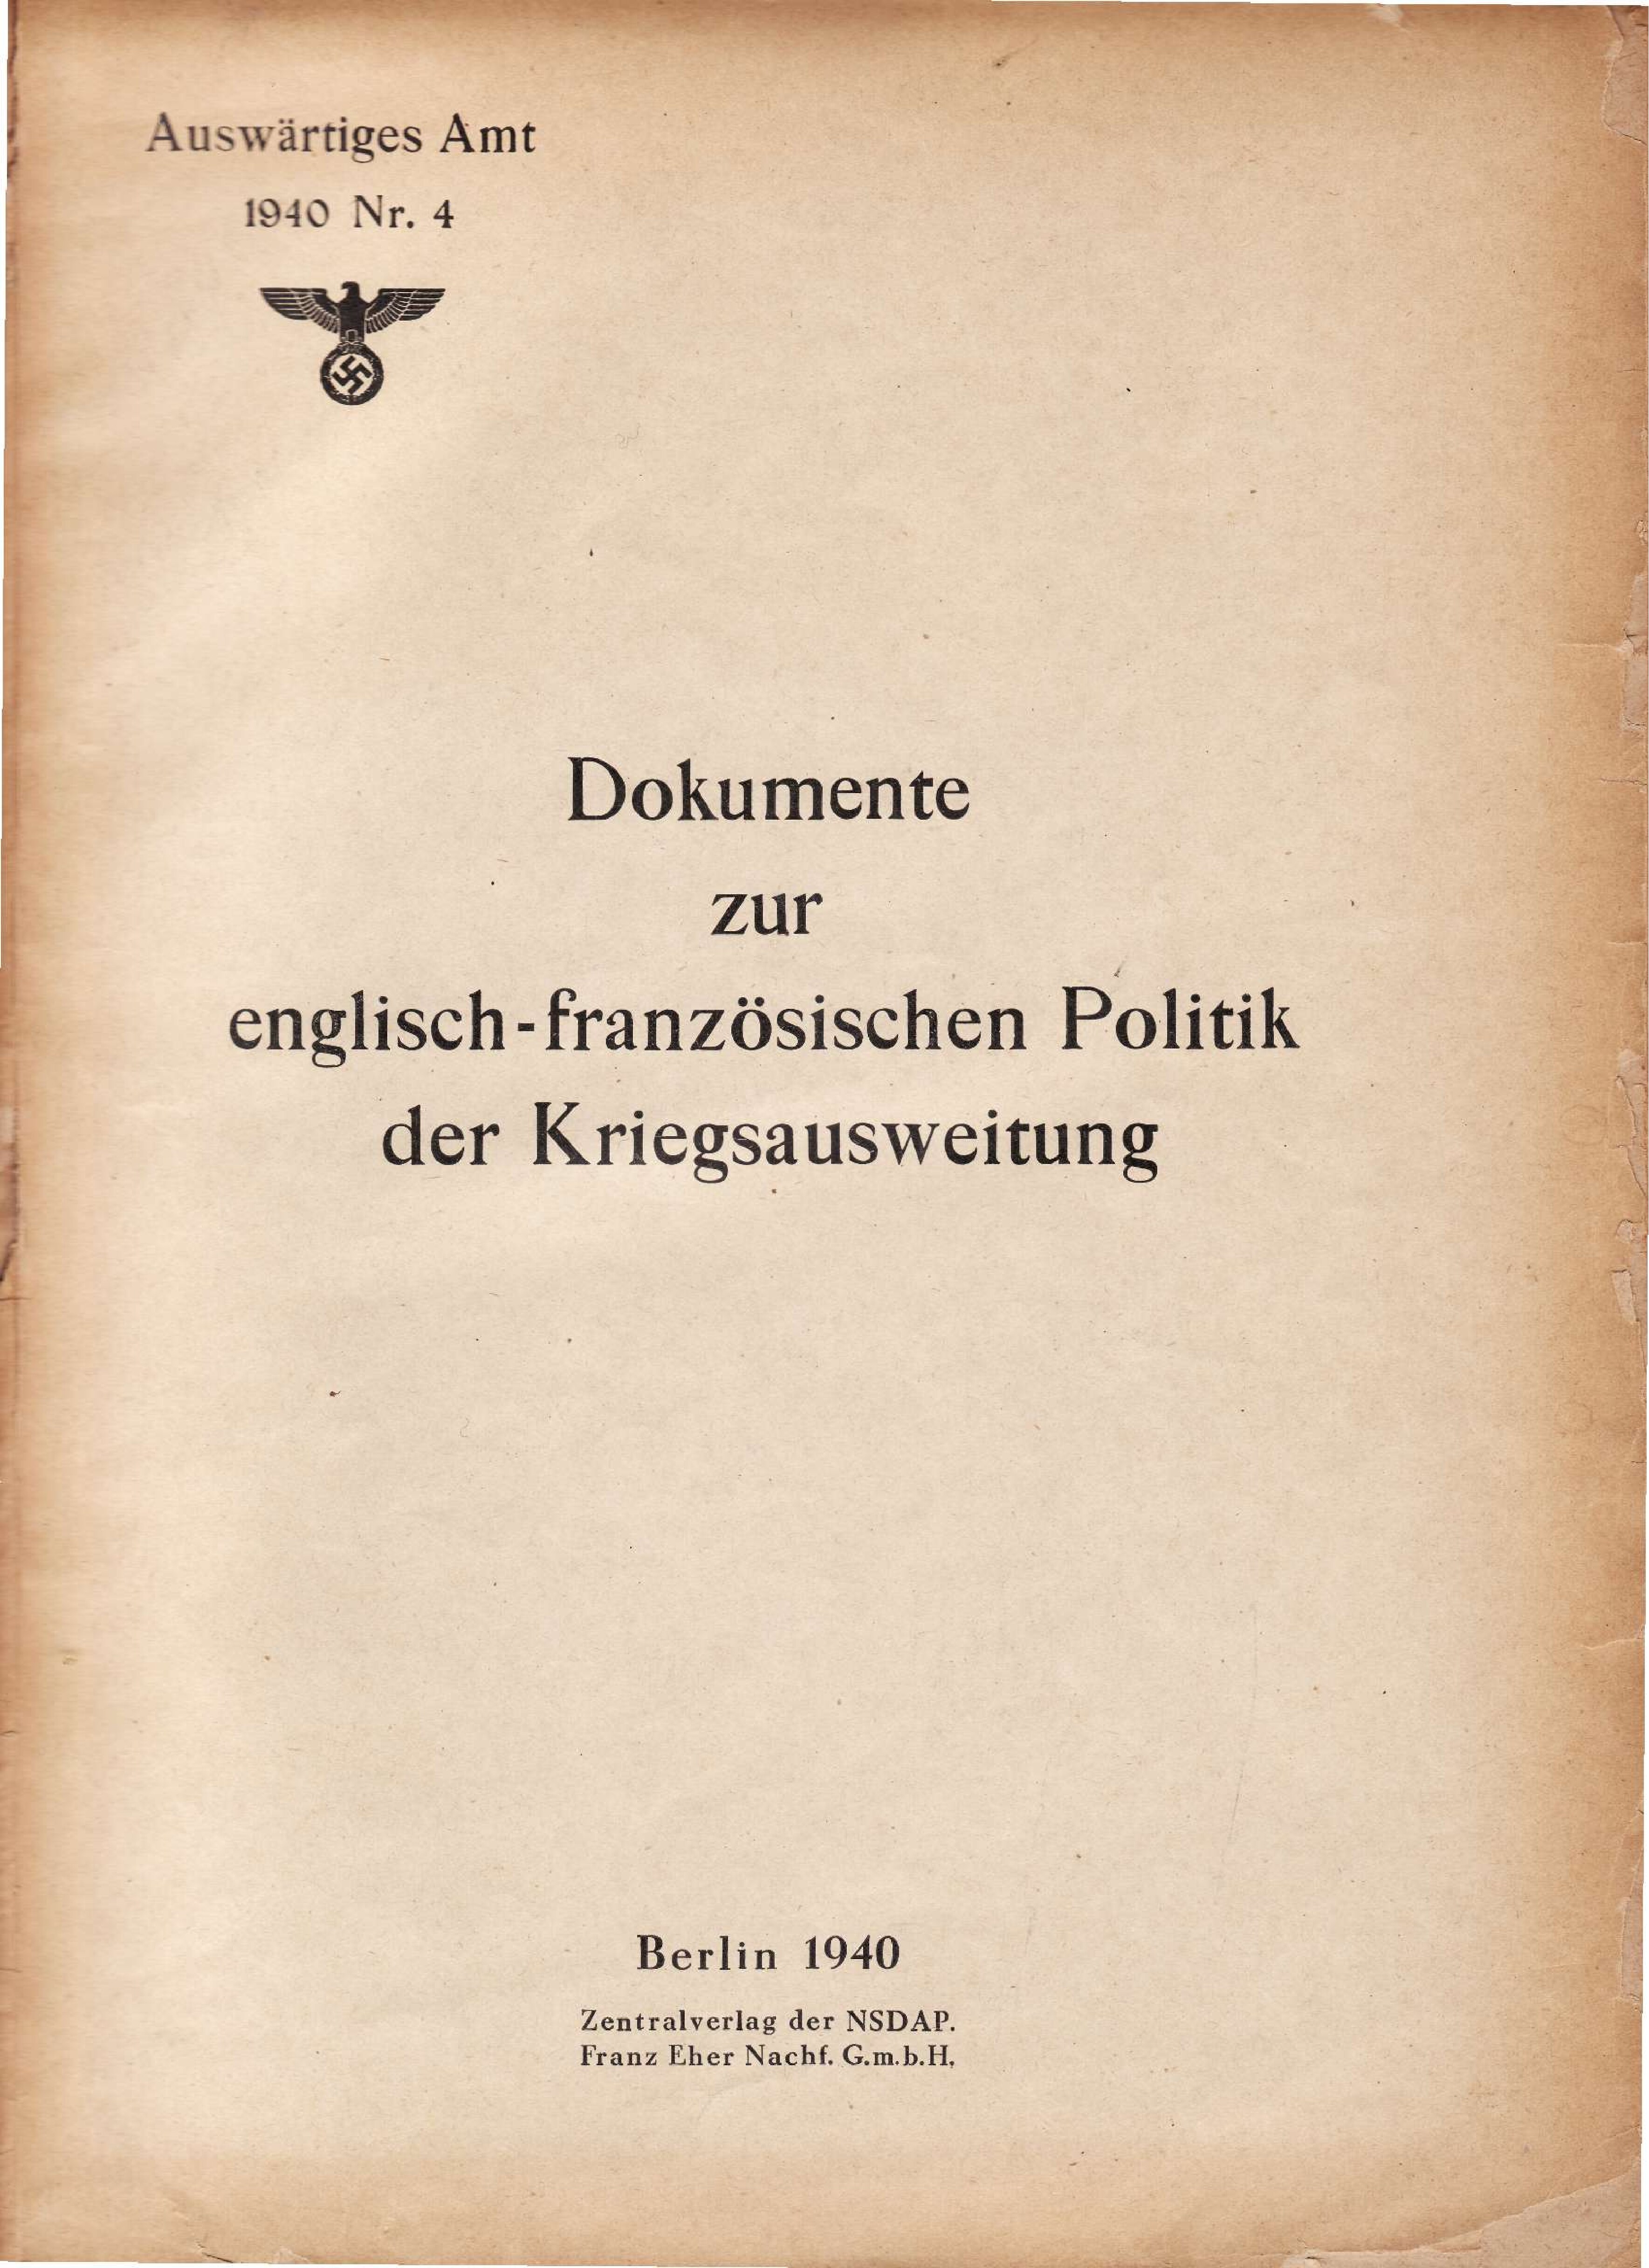 Weissbuch Nr. 4 - Dokumente zur englisch-franzoesischen Politik der Kriegsausweitung (1940, 134 S., Scan)